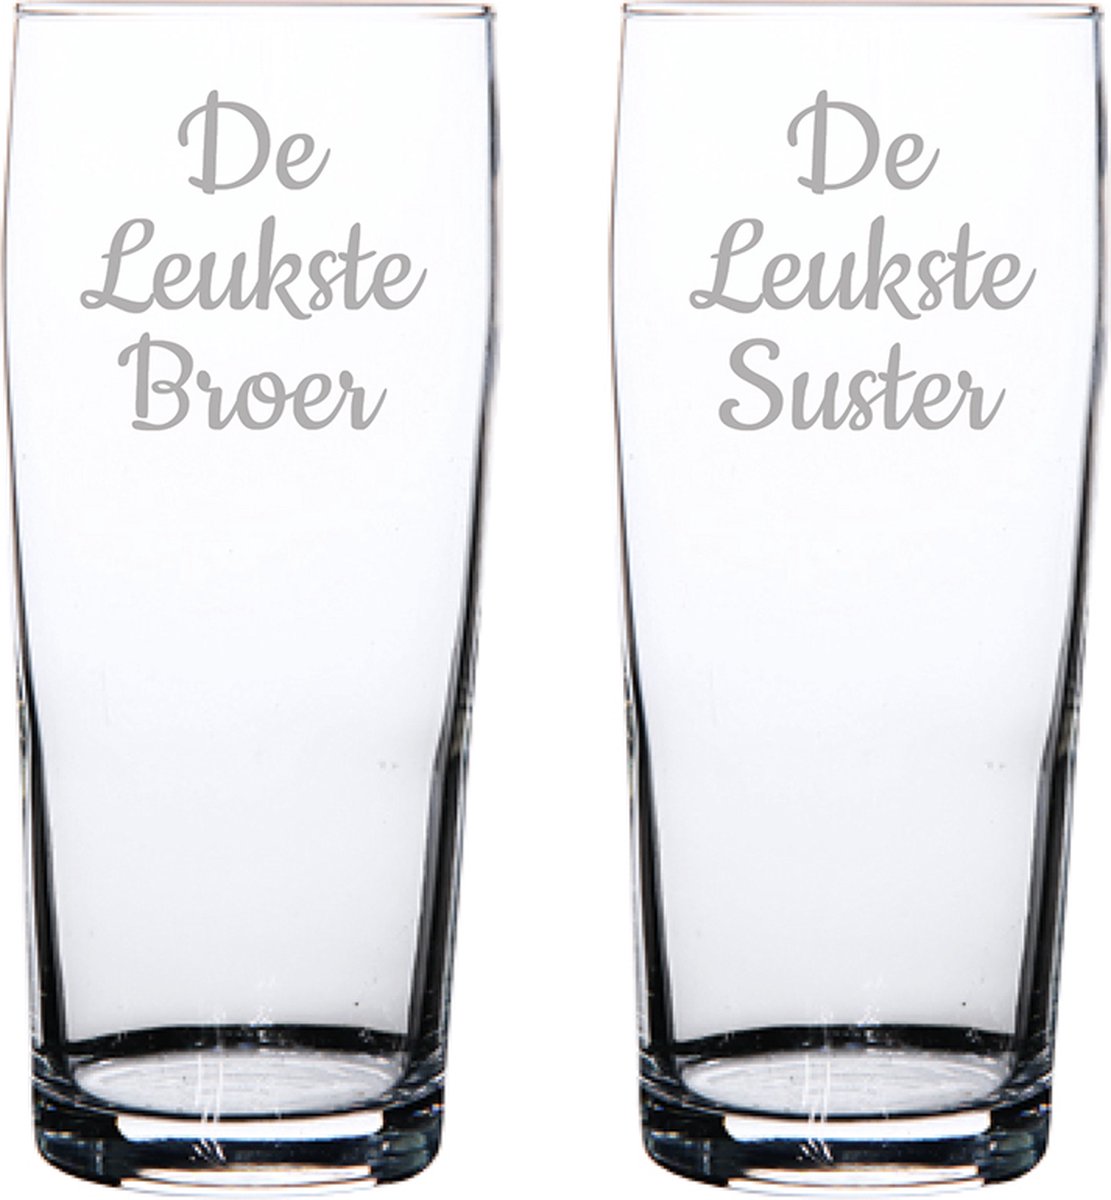 Gegraveerde bierfluitje 19cl De Leukste Broer-De Leukste Suster